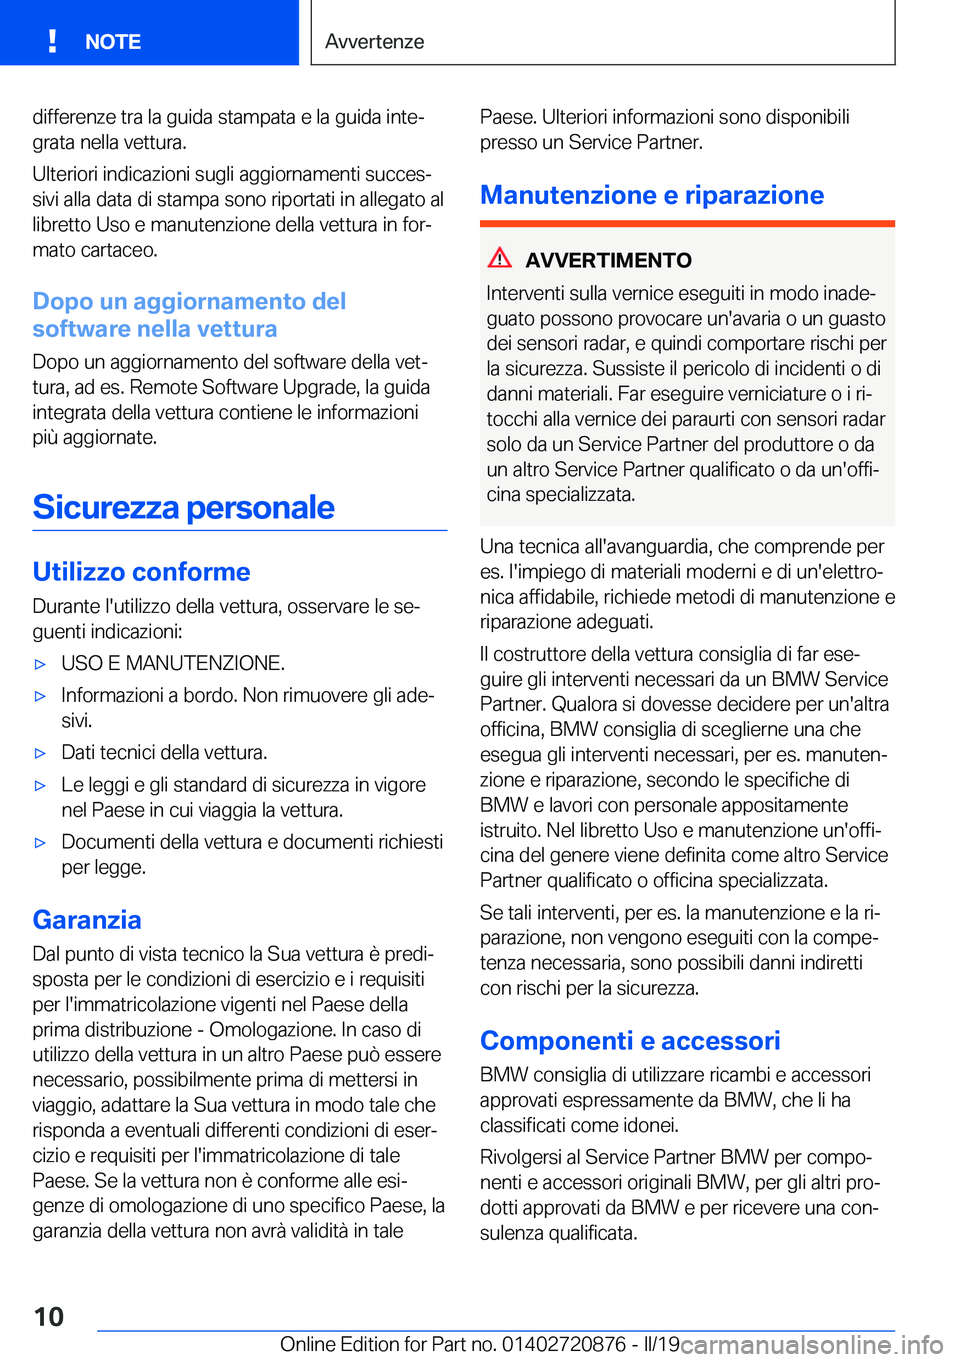 BMW X7 2019  Libretti Di Uso E manutenzione (in Italian) �d�i�f�f�e�r�e�n�z�e��t�r�a��l�a��g�u�i�d�a��s�t�a�m�p�a�t�a��e��l�a��g�u�i�d�a��i�n�t�eª�g�r�a�t�a��n�e�l�l�a��v�e�t�t�u�r�a�.
�U�l�t�e�r�i�o�r�i��i�n�d�i�c�a�z�i�o�n�i��s�u�g�l�i��a�g